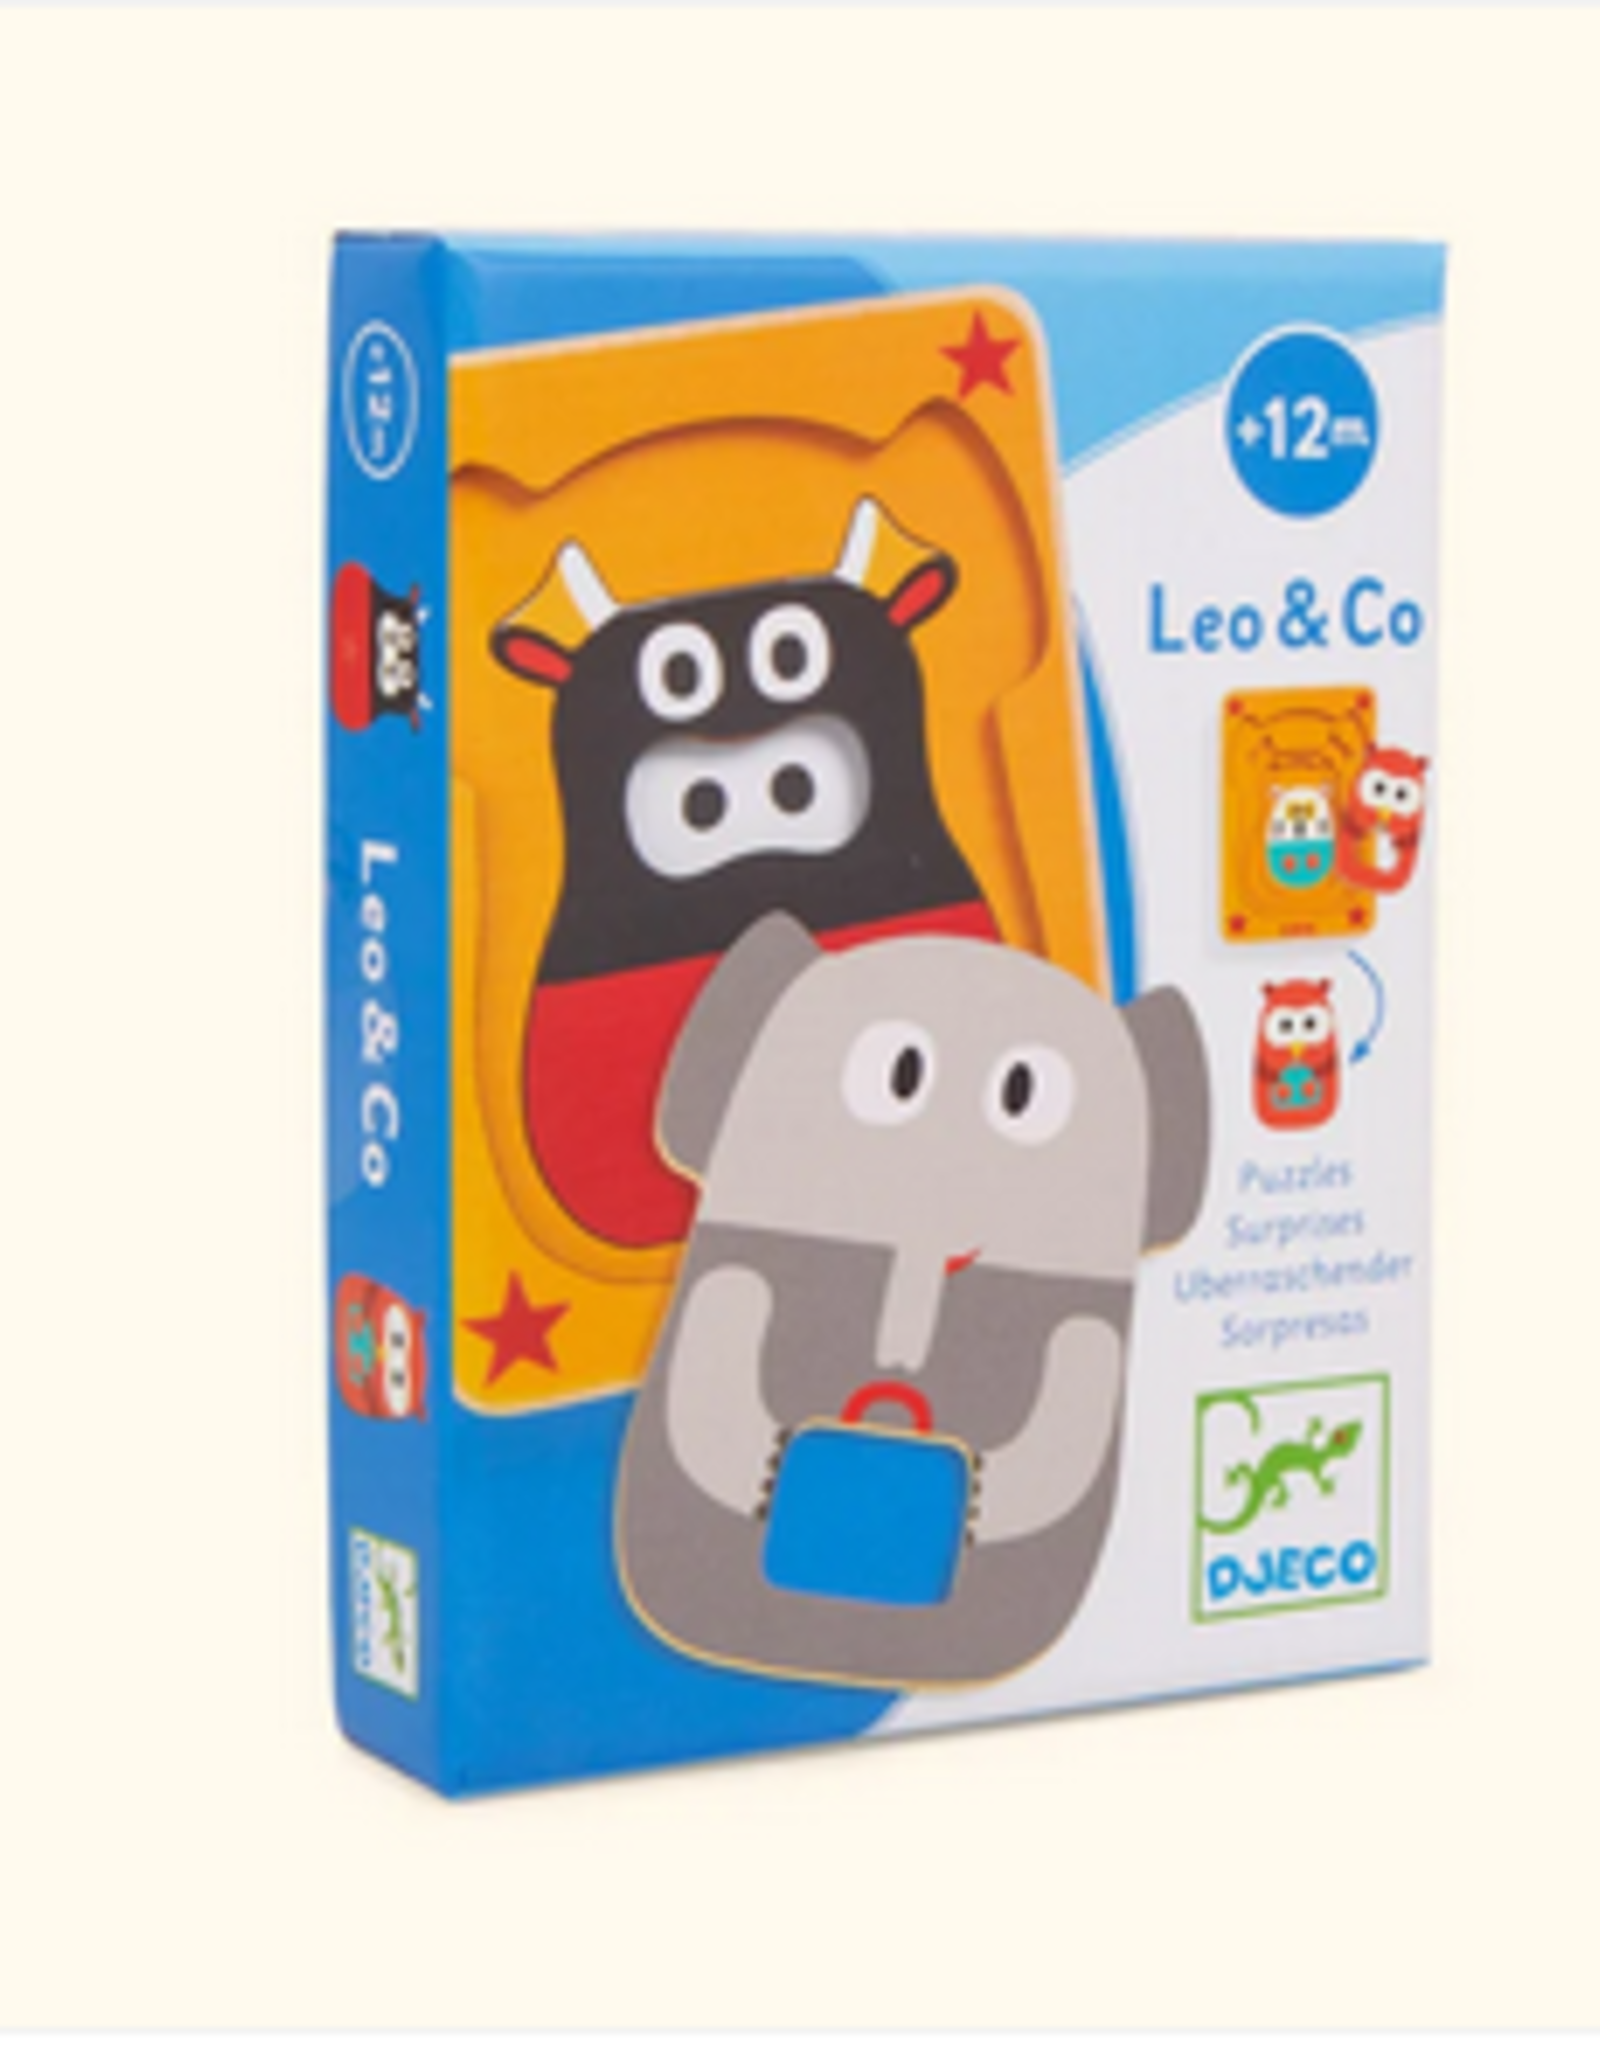 Djeco 4 Layer Puzzle: Leo & Co